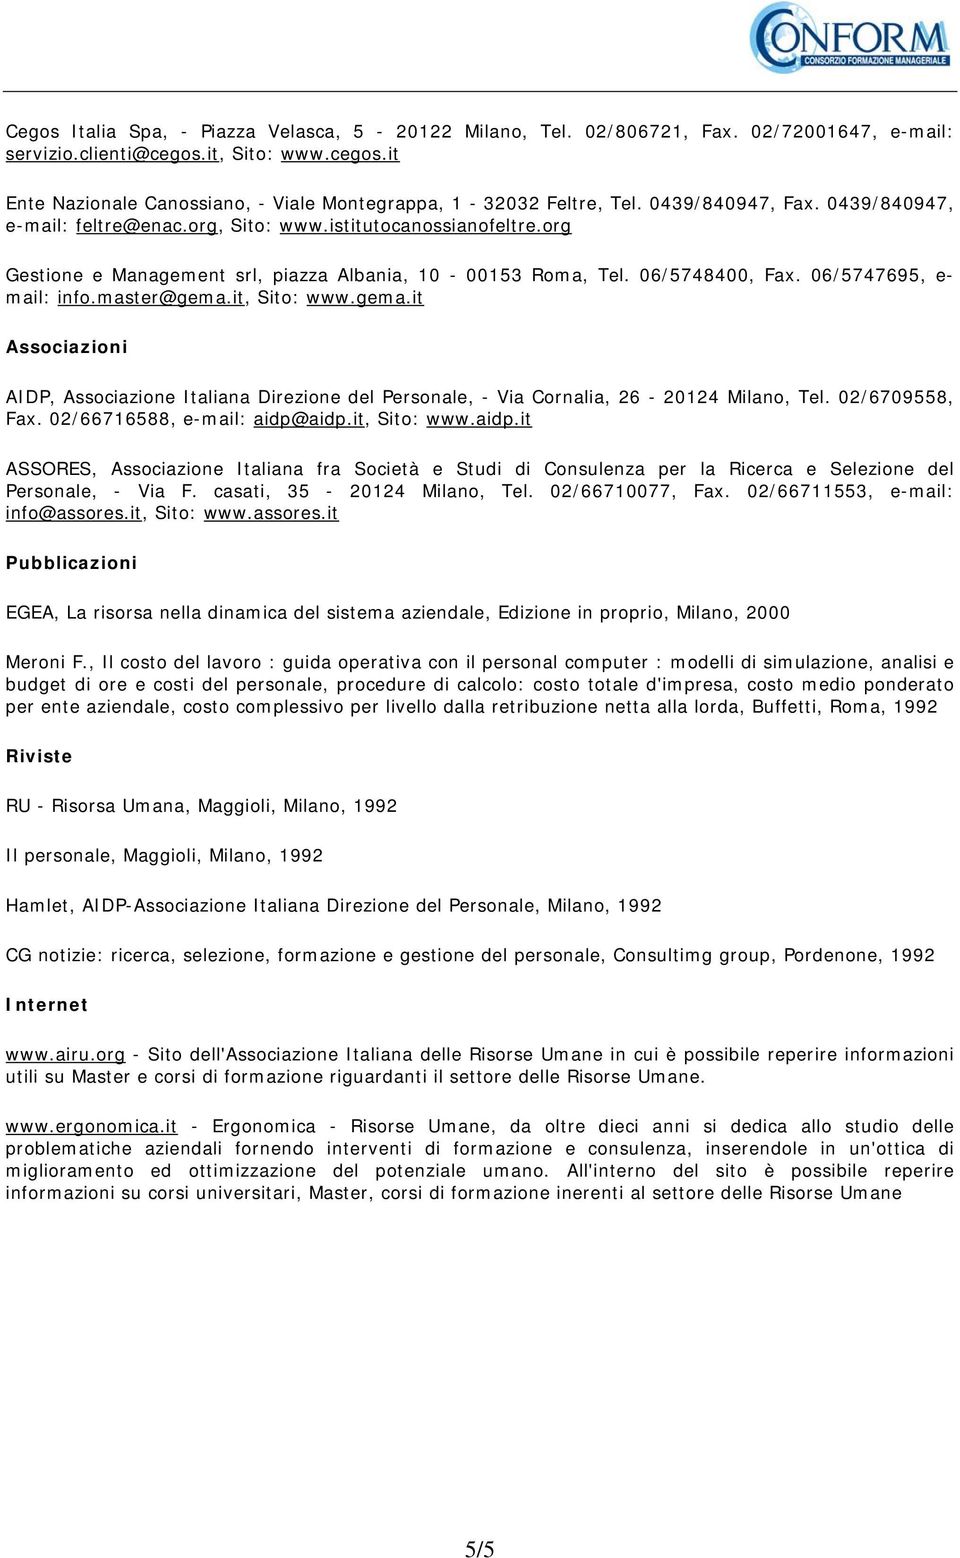 06/5747695, e- mail: info.master@gema.it, Sito: www.gema.it Associazioni AIDP, Associazione Italiana Direzione del Personale, - Via Cornalia, 26-20124 Milano, Tel. 02/6709558, Fax.